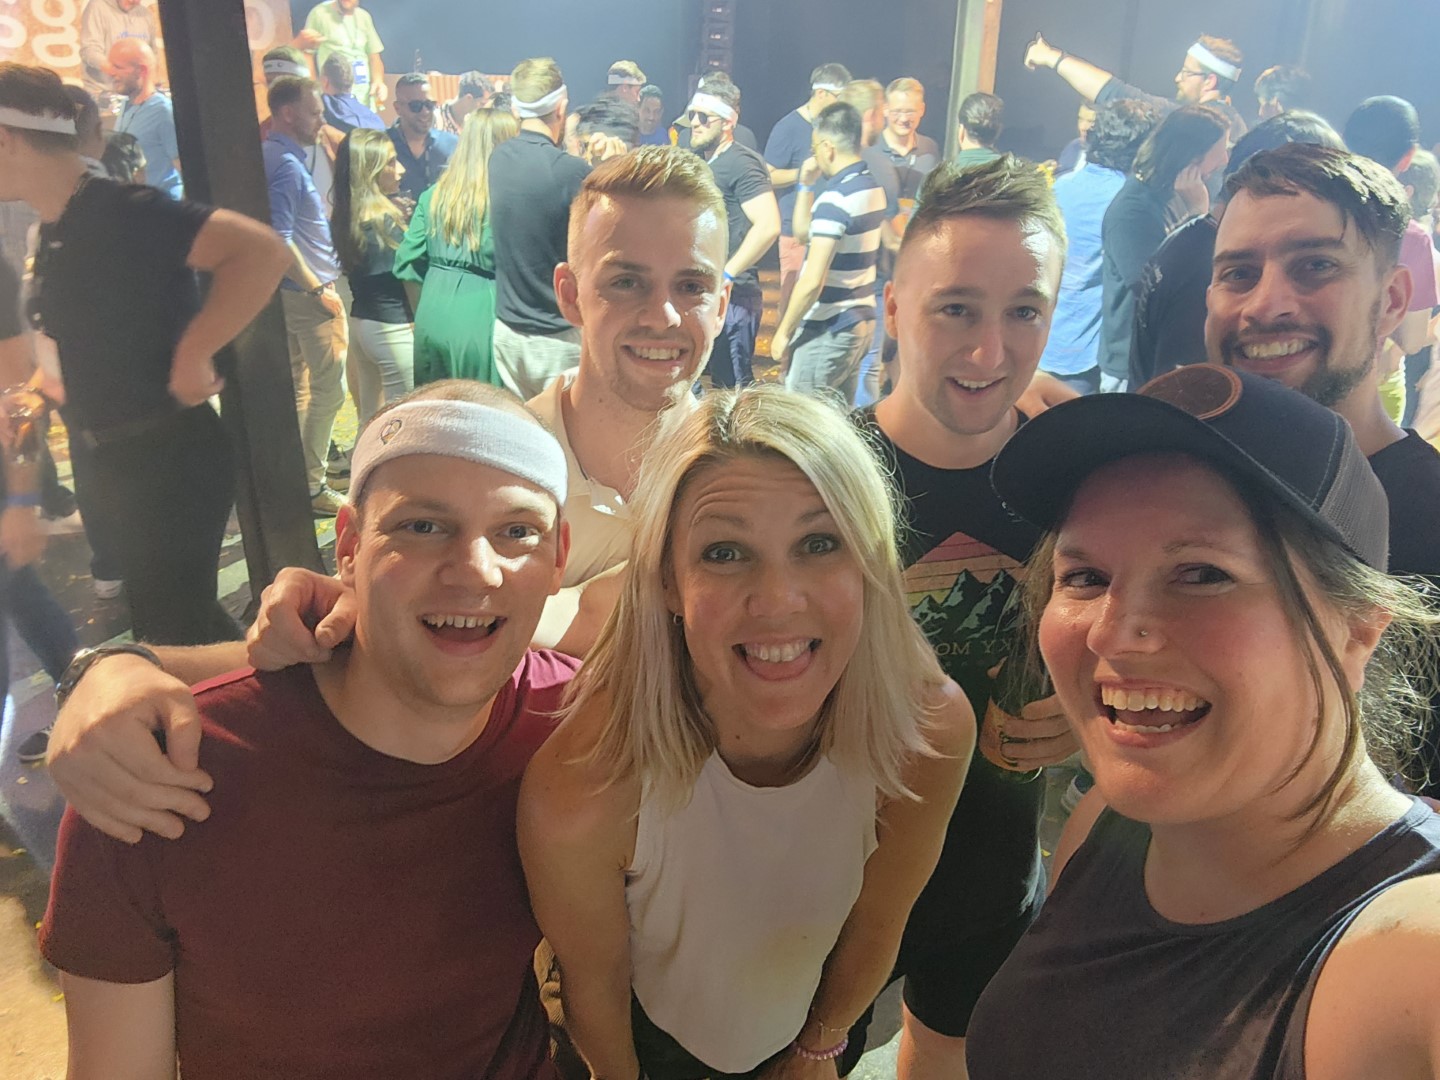 A selfie of the dancing crew from bingo night.